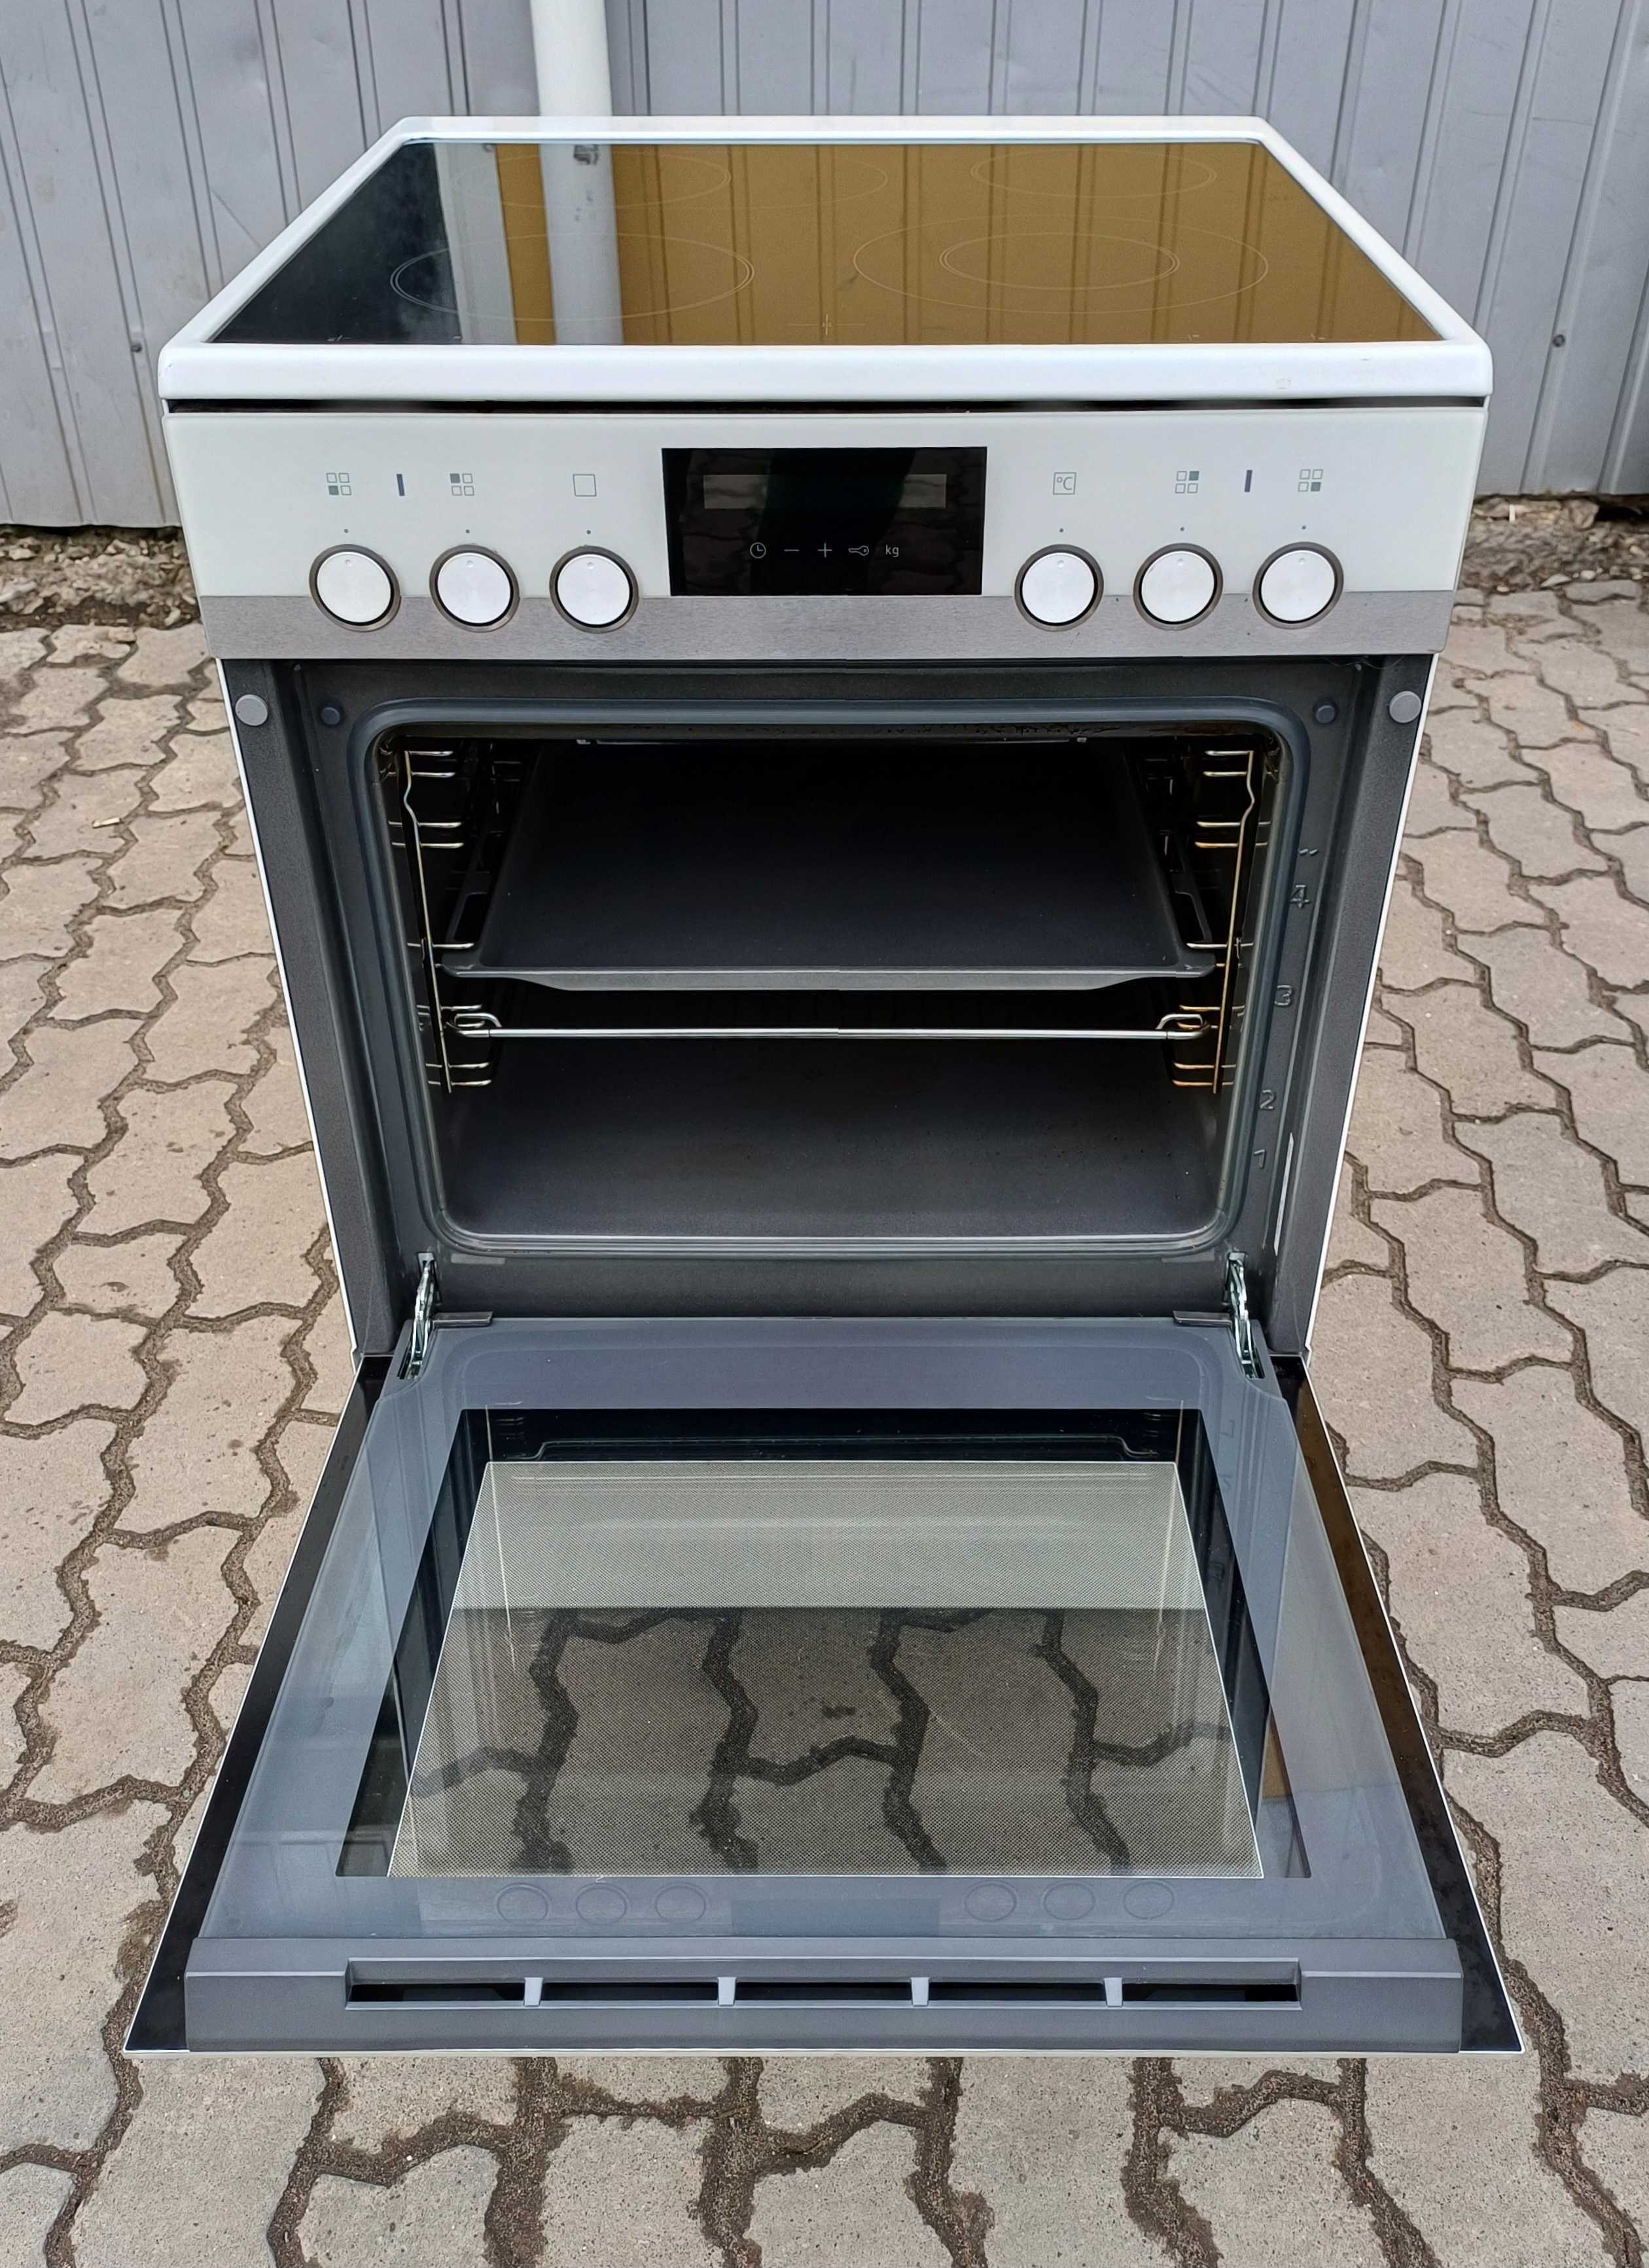 Електрична кухонна плита 60см Сіменс IQ500 Siemens HK9S5A220 біле скло